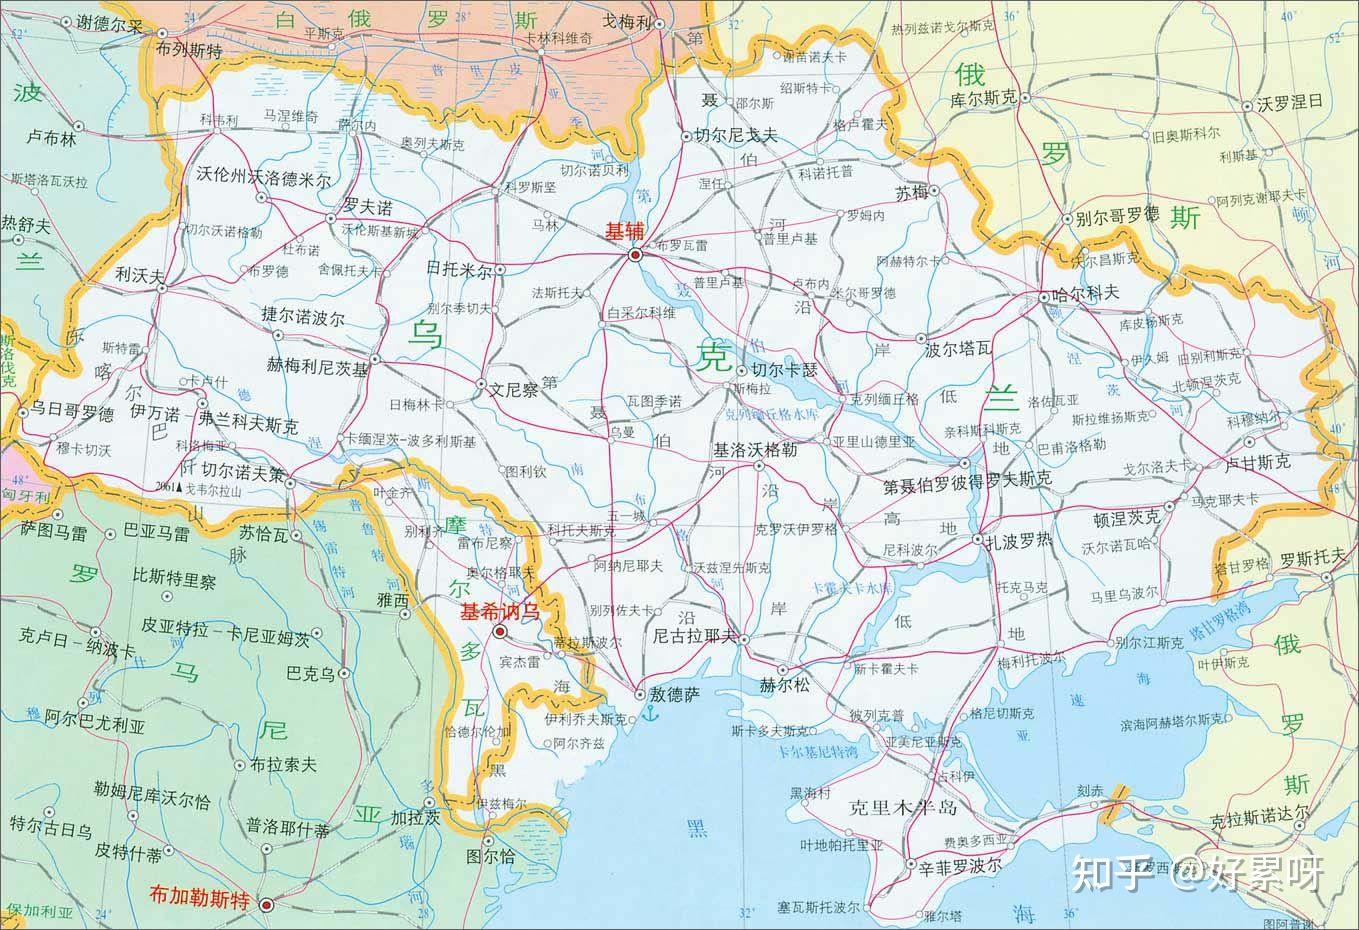 乌克兰高清地图(将成为历史地图)-内外网搜刮 - 知乎